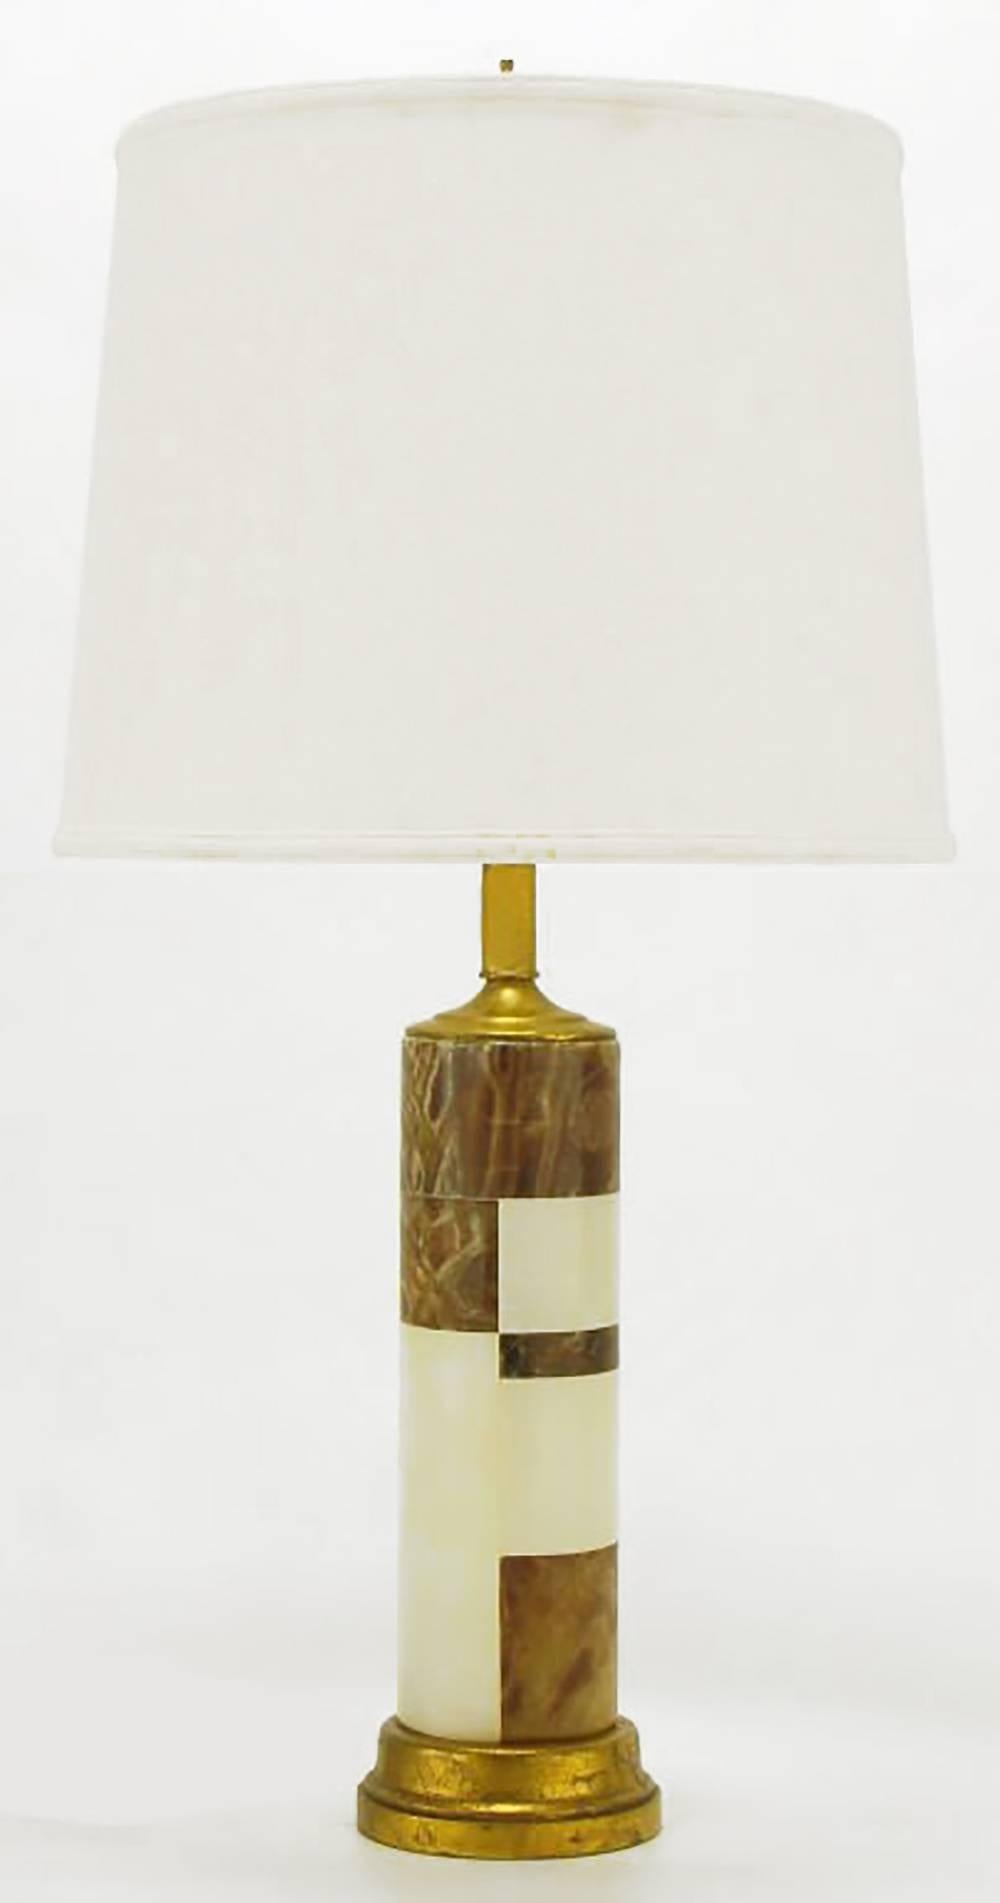 Lampe de table cylindrique en marbre rouge et pierre d'onyx tessellée avec base, chapeau et tige en bois doré à la manière des lampes de table de Hansen. Harpe et douille en laiton.